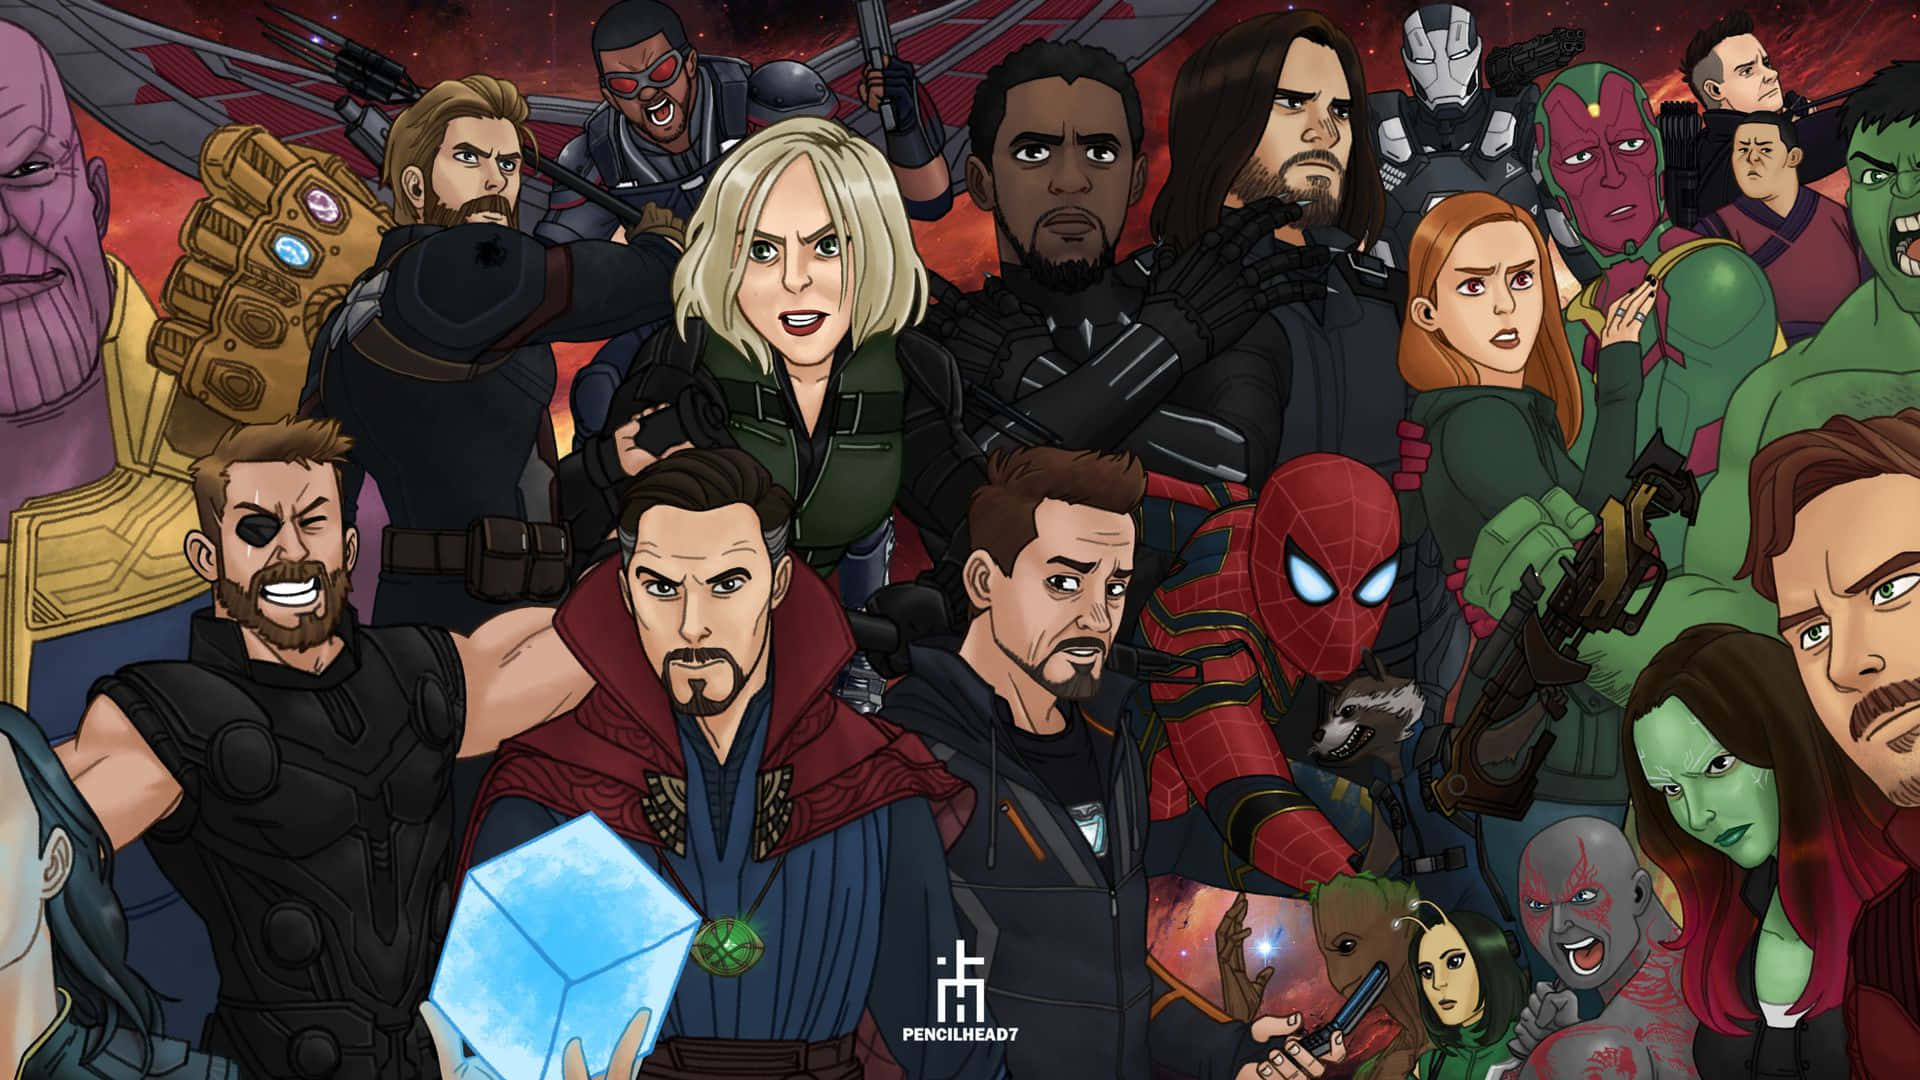 Avengers baggrundskitse: Et billede af fire berømte karakterer fra Marvel Comics.